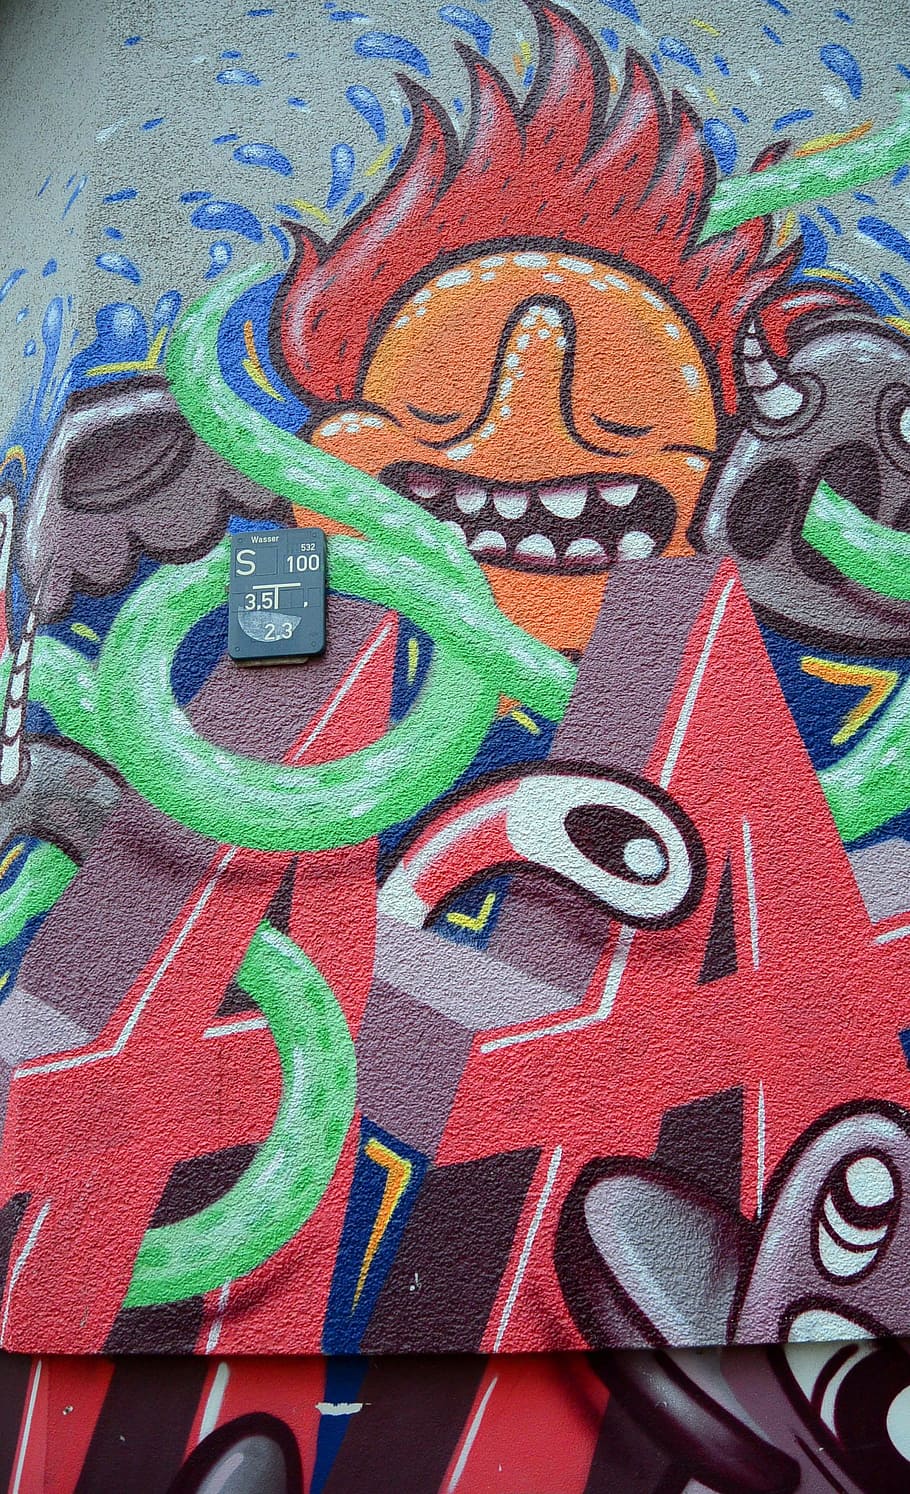 Grafite, Arte de rua, Arte urbana, Arte, Parede, mural, fachada, pulverizador, Berlim, Kreuzberg